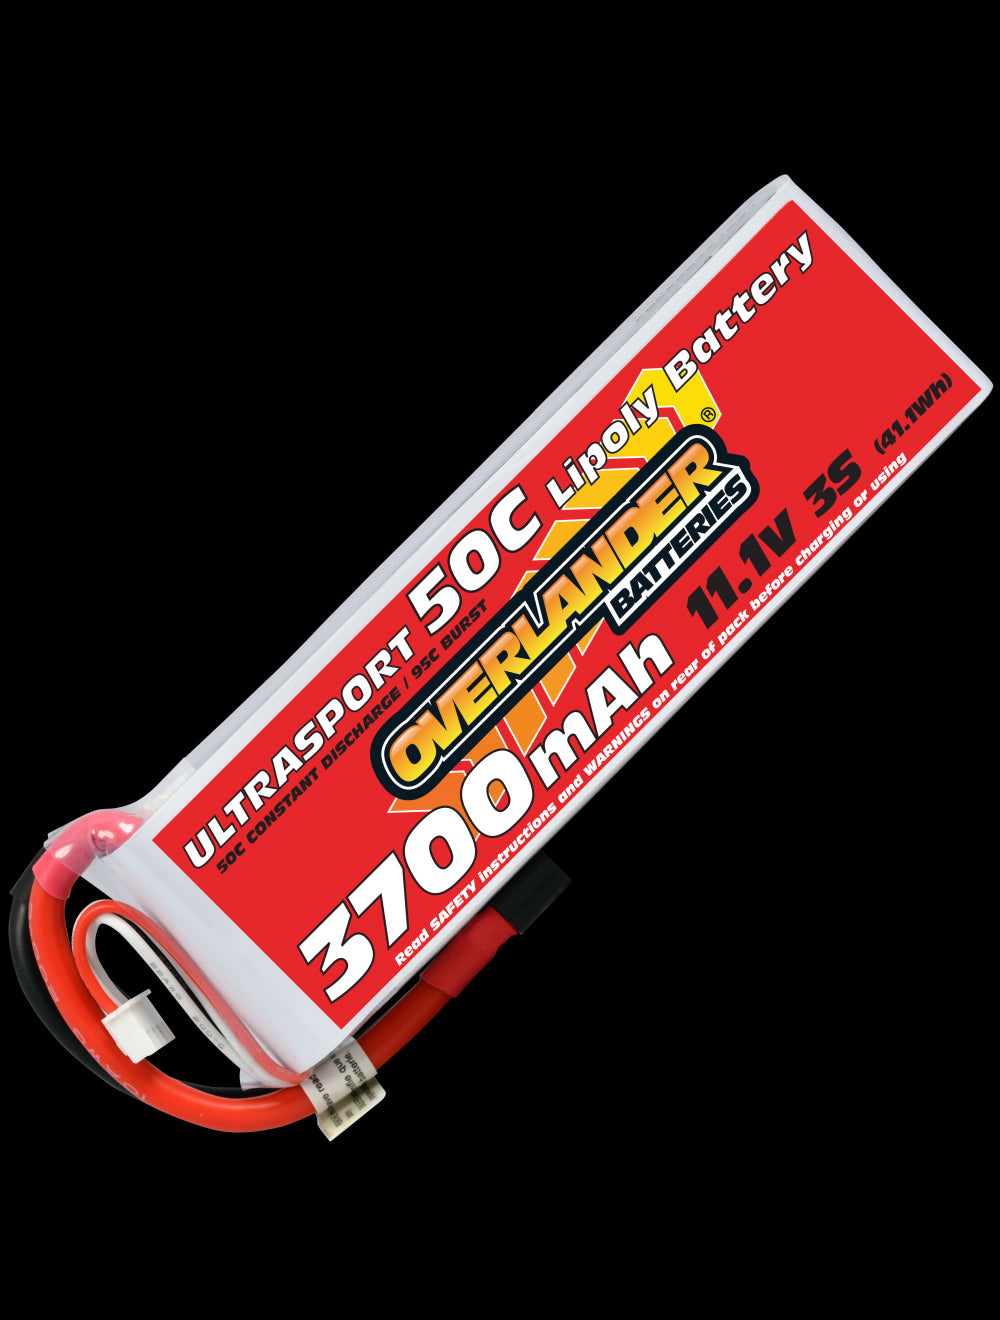 Overlander 3700mAh 11.1V 3S 50C Ultrasport LiPo Battery - XT60 Connector 2628